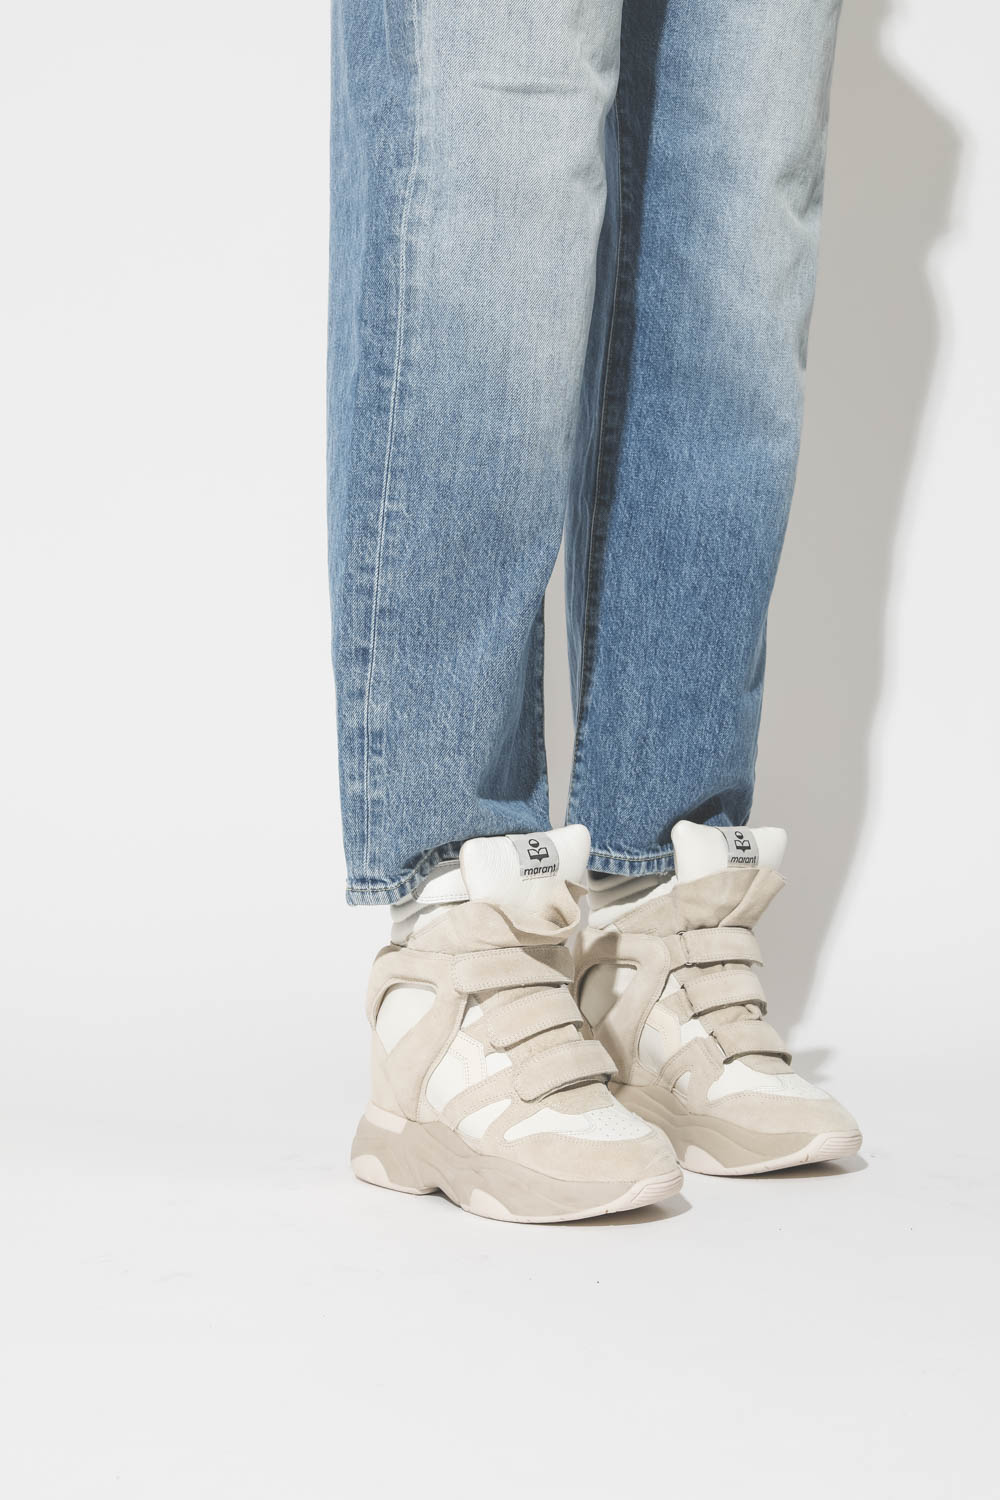 Niet essentieel Fascineren buitenaards wezen Isabel Marant Chaussures Sneakers Balskee – White